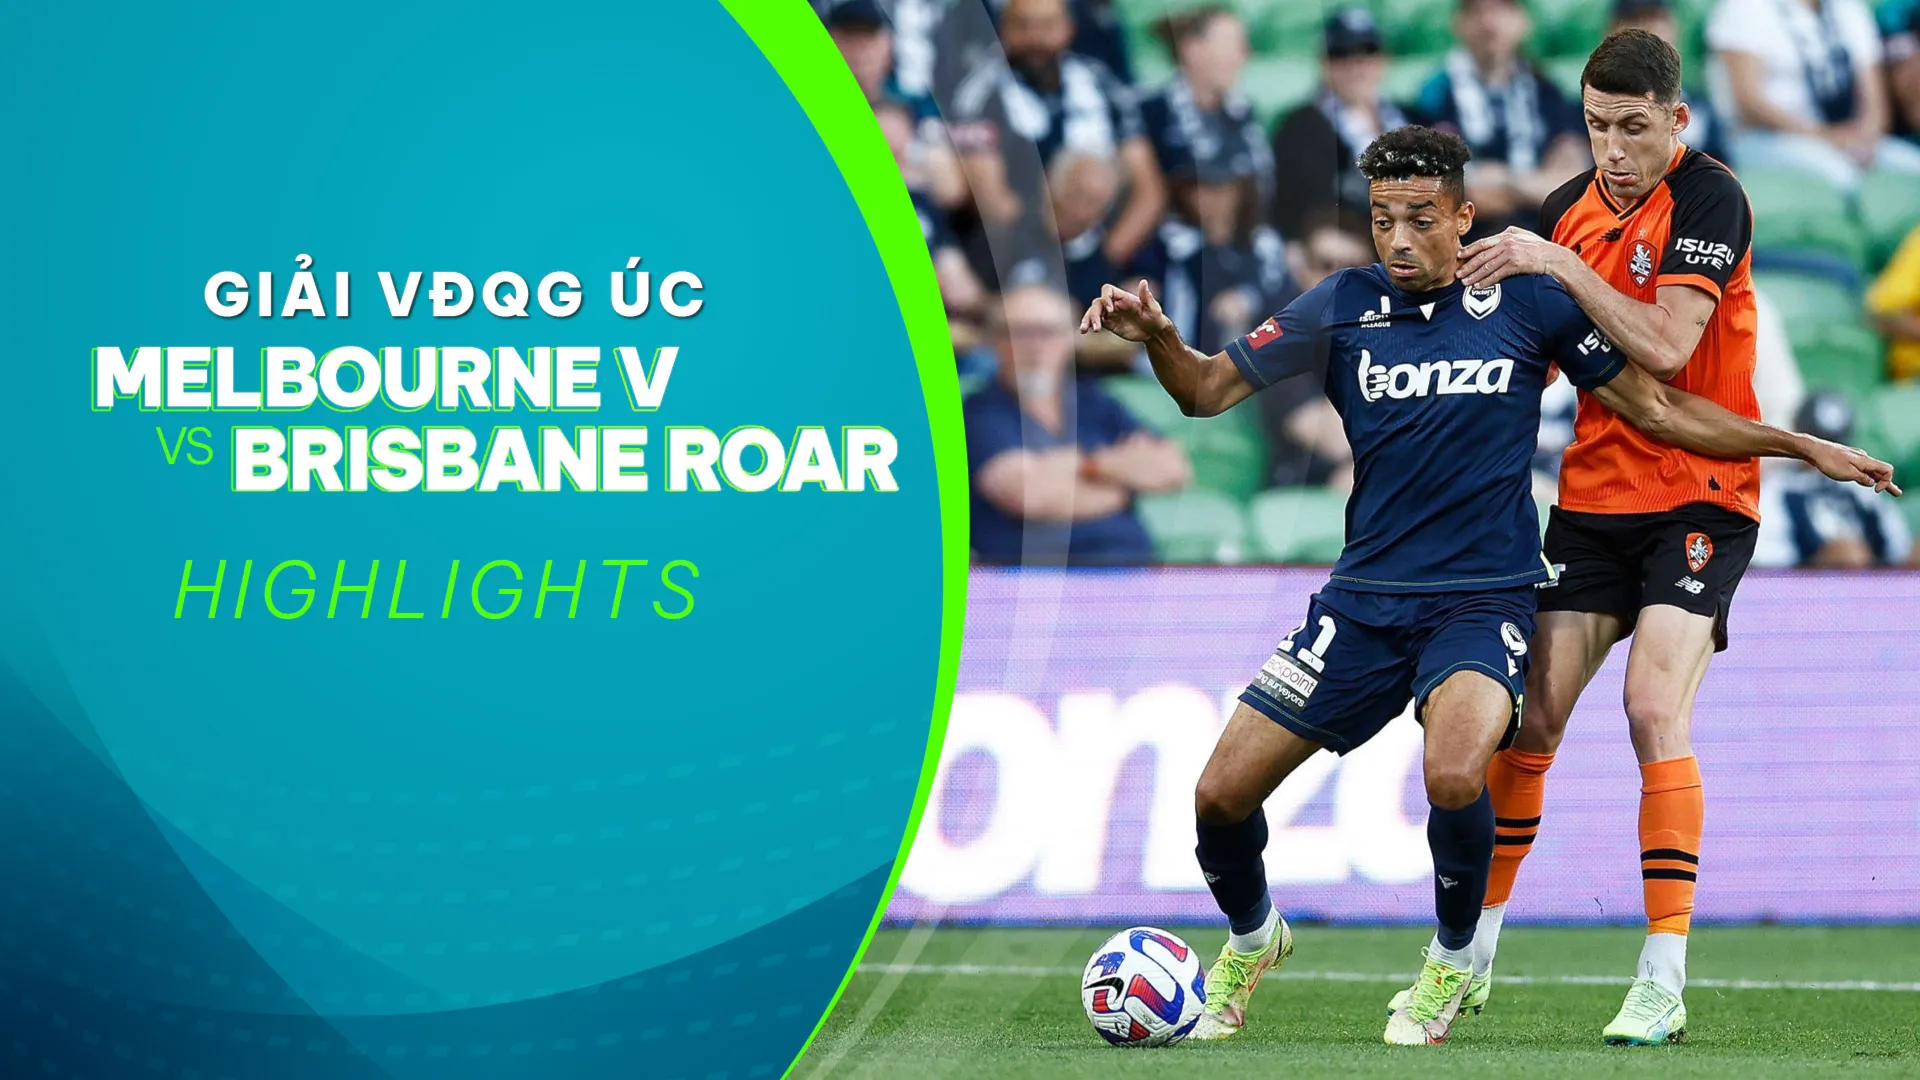 Highlights Melbourne Victory - Brisbane Roar (Vòng 11 - Giải VĐQG Úc 2022/23)